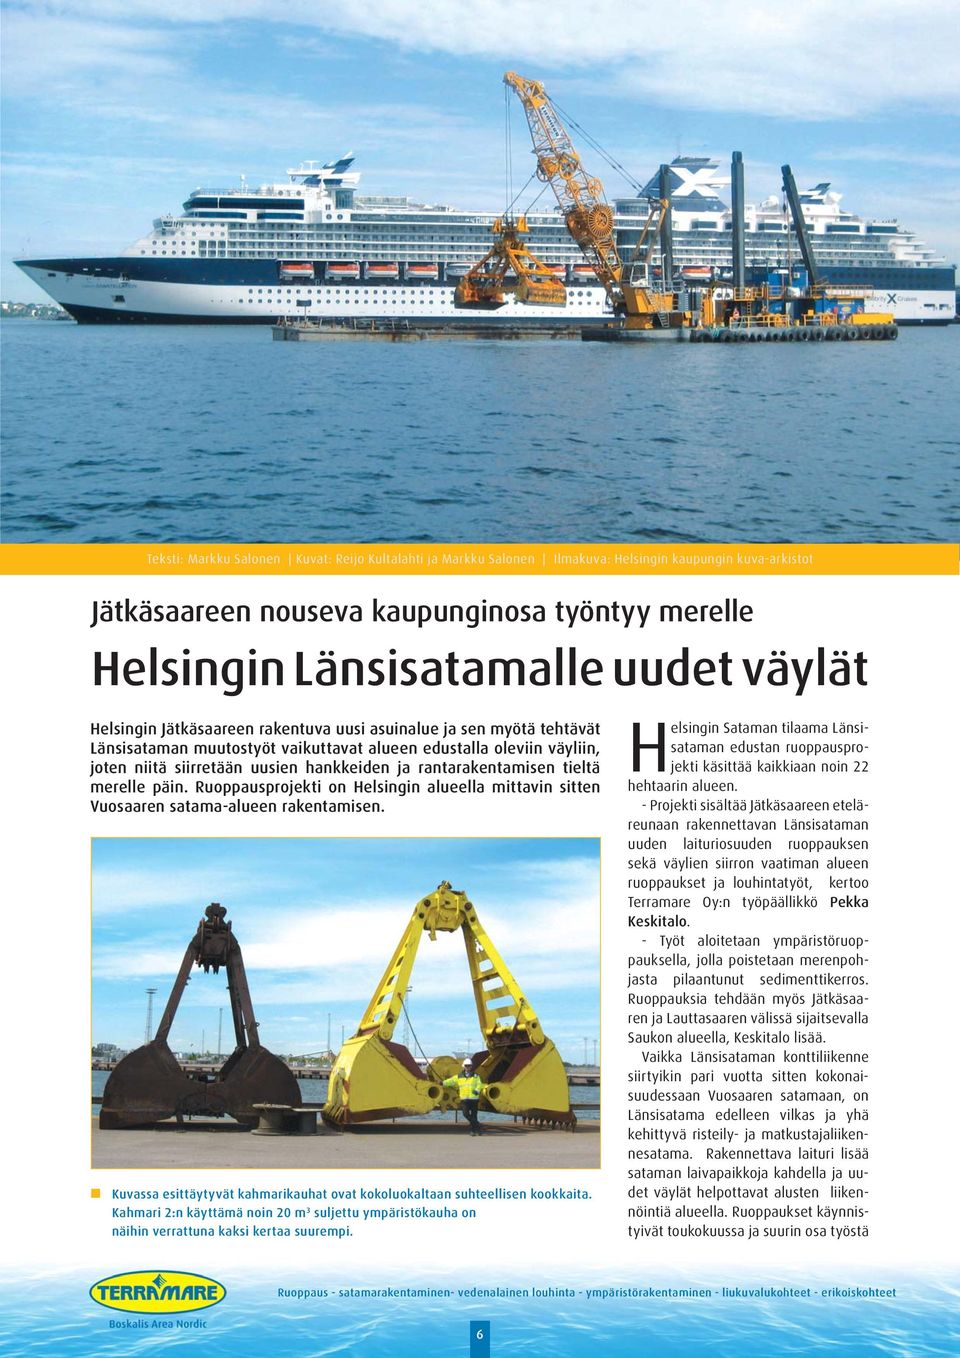 rantarakentamisen tieltä merelle päin. Ruoppausprojekti on Helsingin alueella mittavin sitten Vuosaaren satama-alueen rakentamisen.